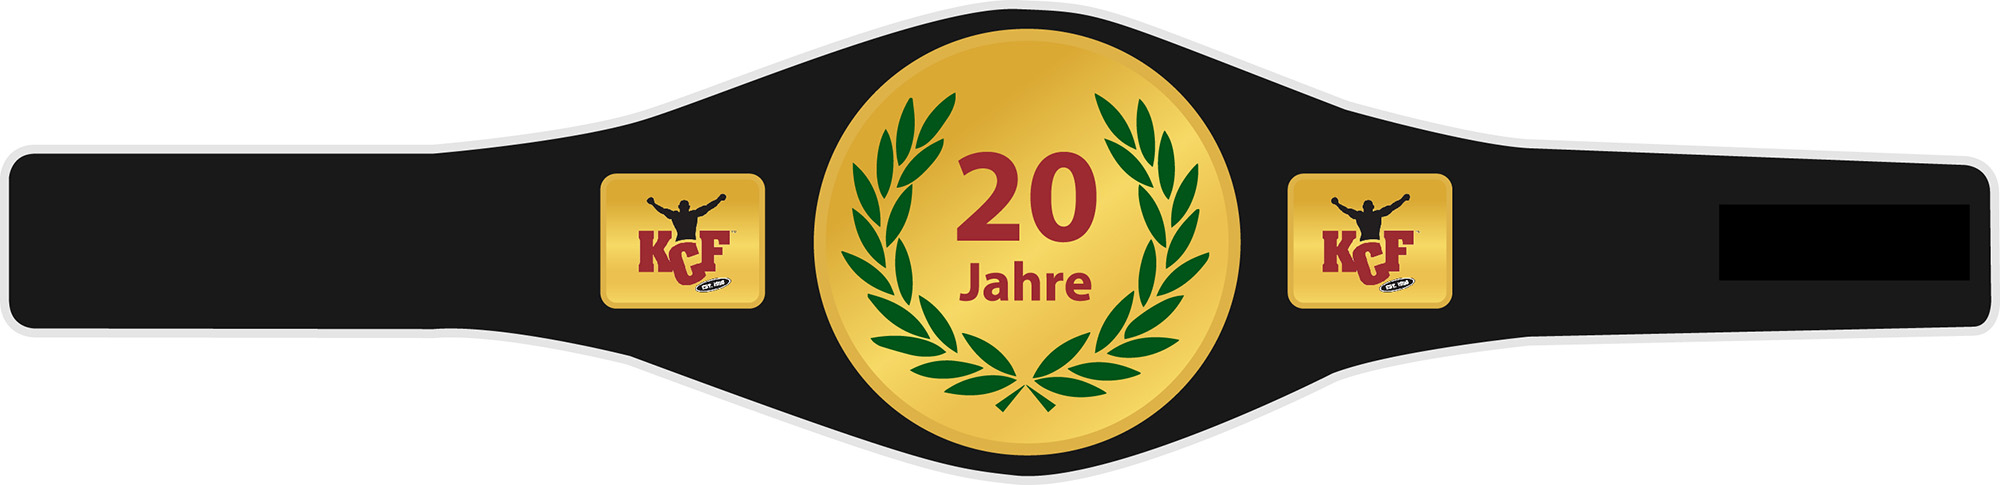 20 Jahre KCF Champion Grtel - Jubilumsgeschenk